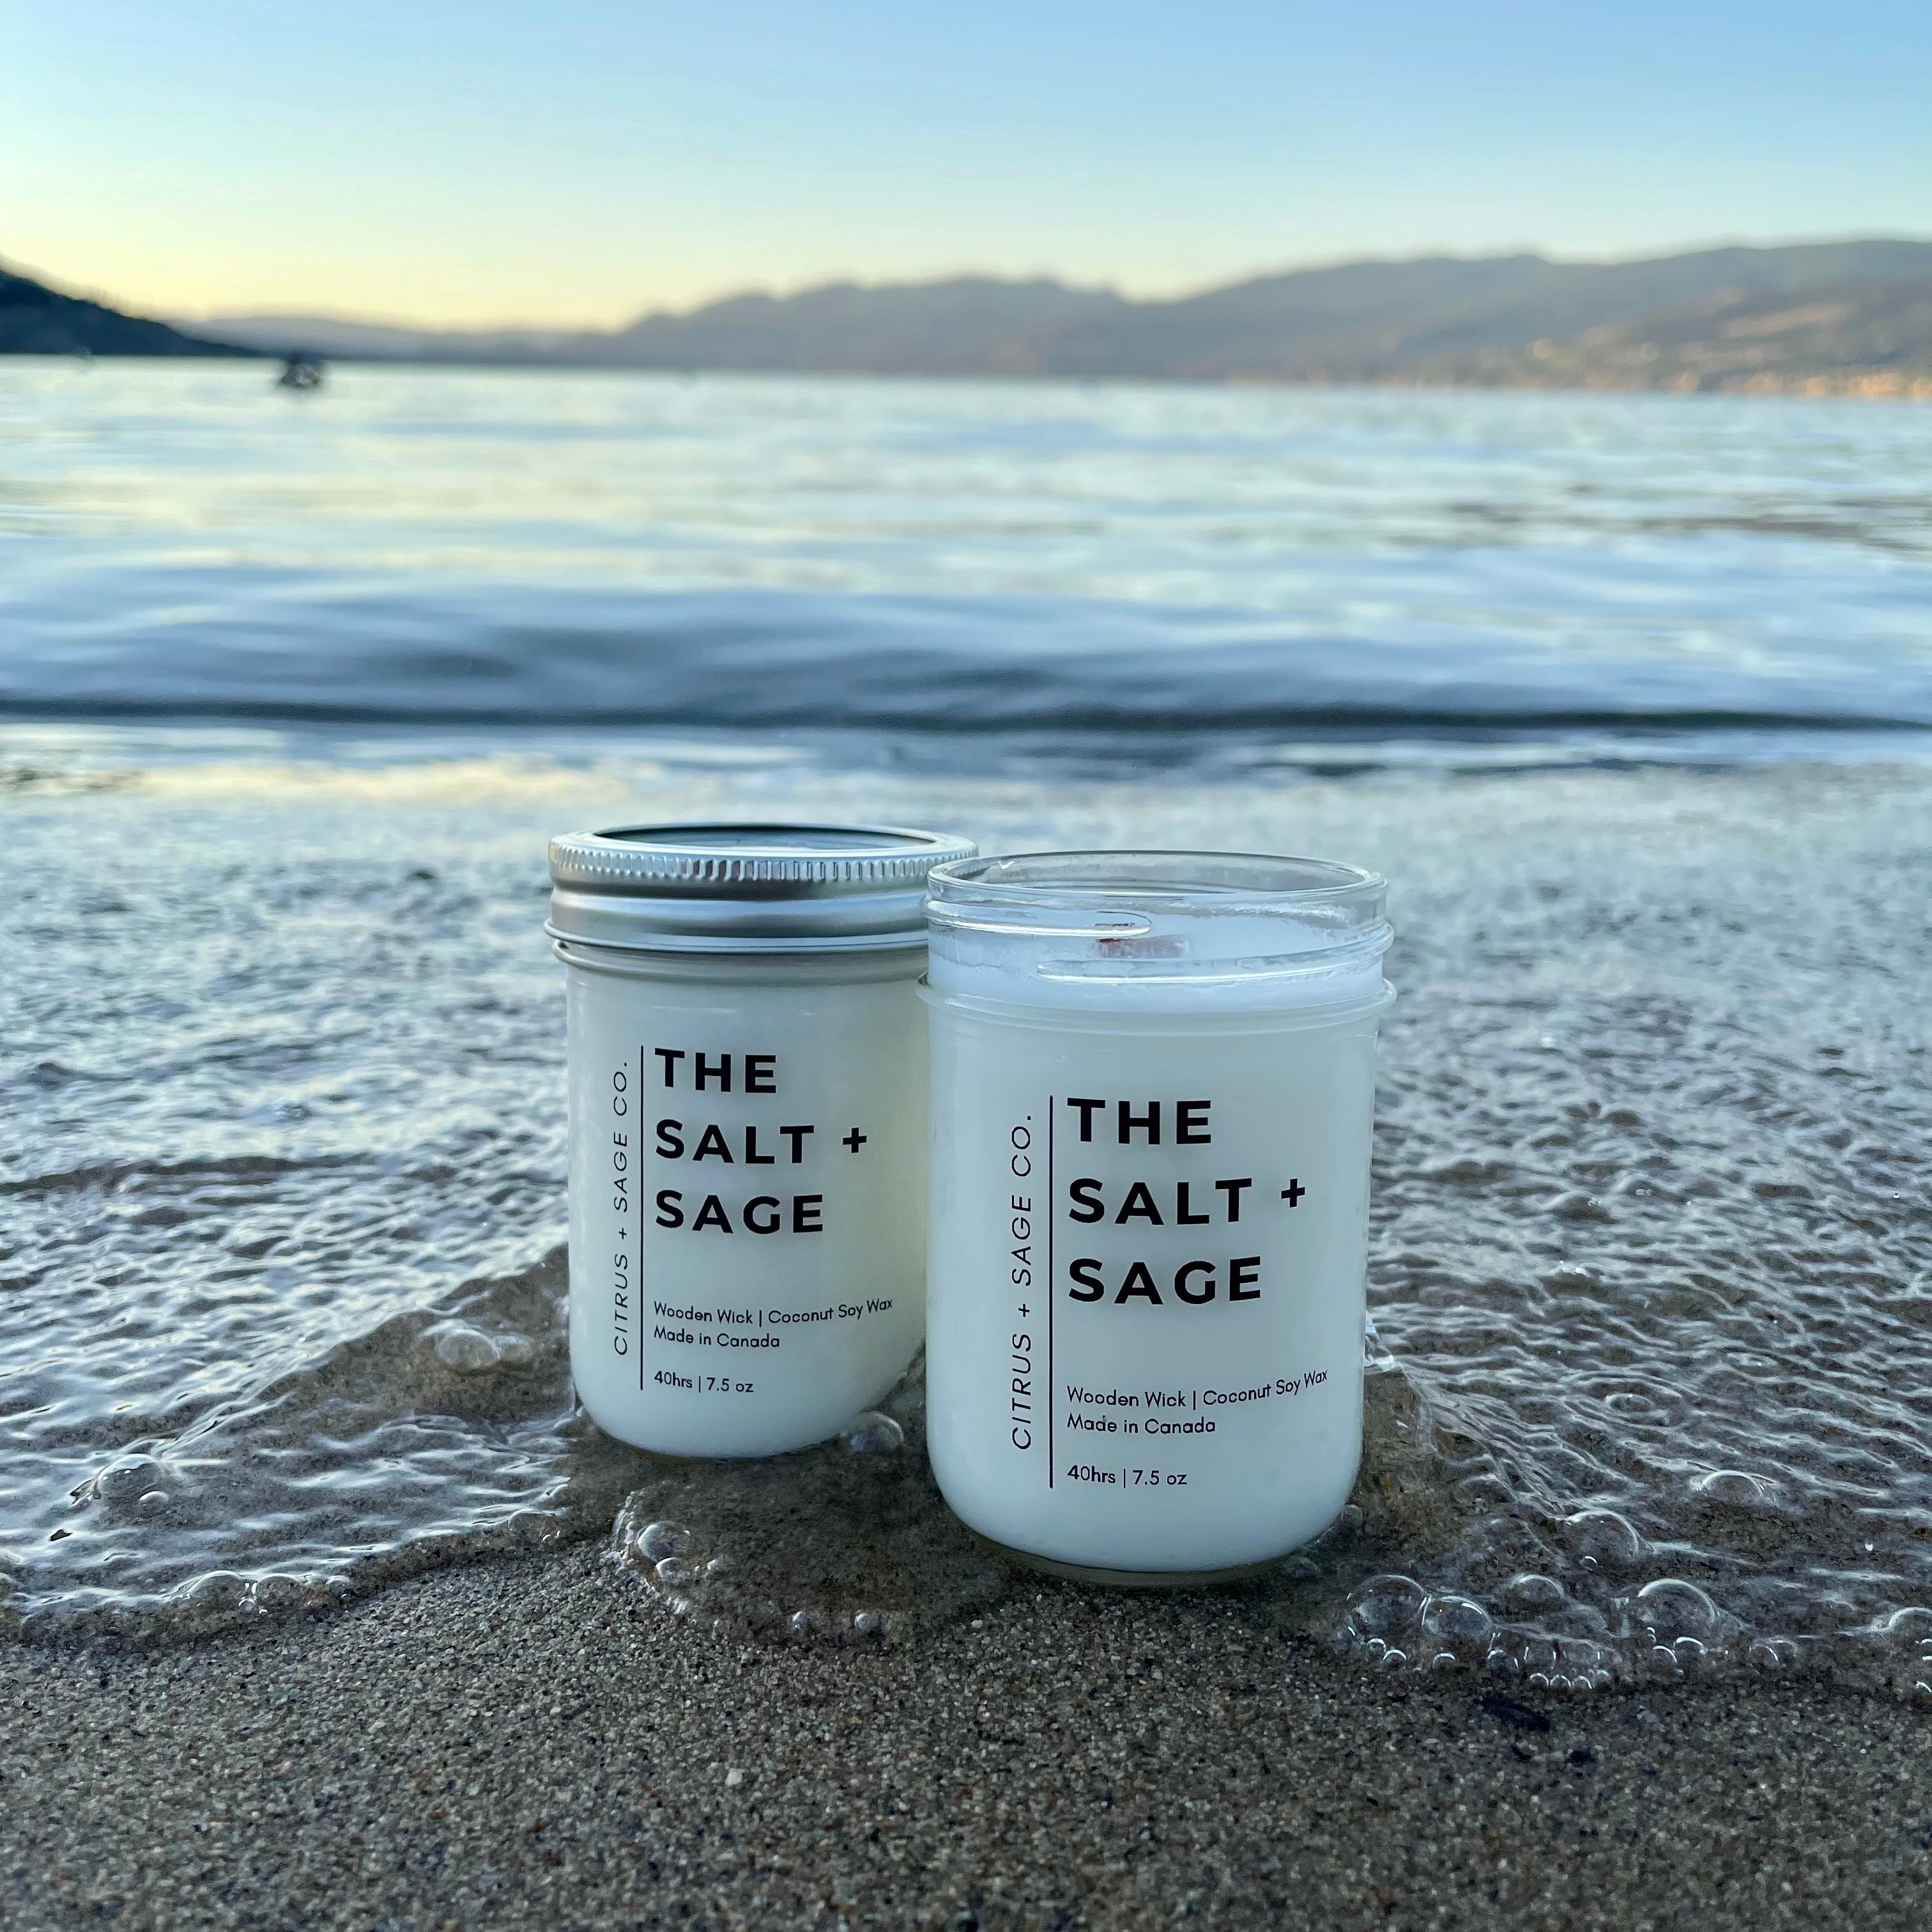 The Salt + Sage.